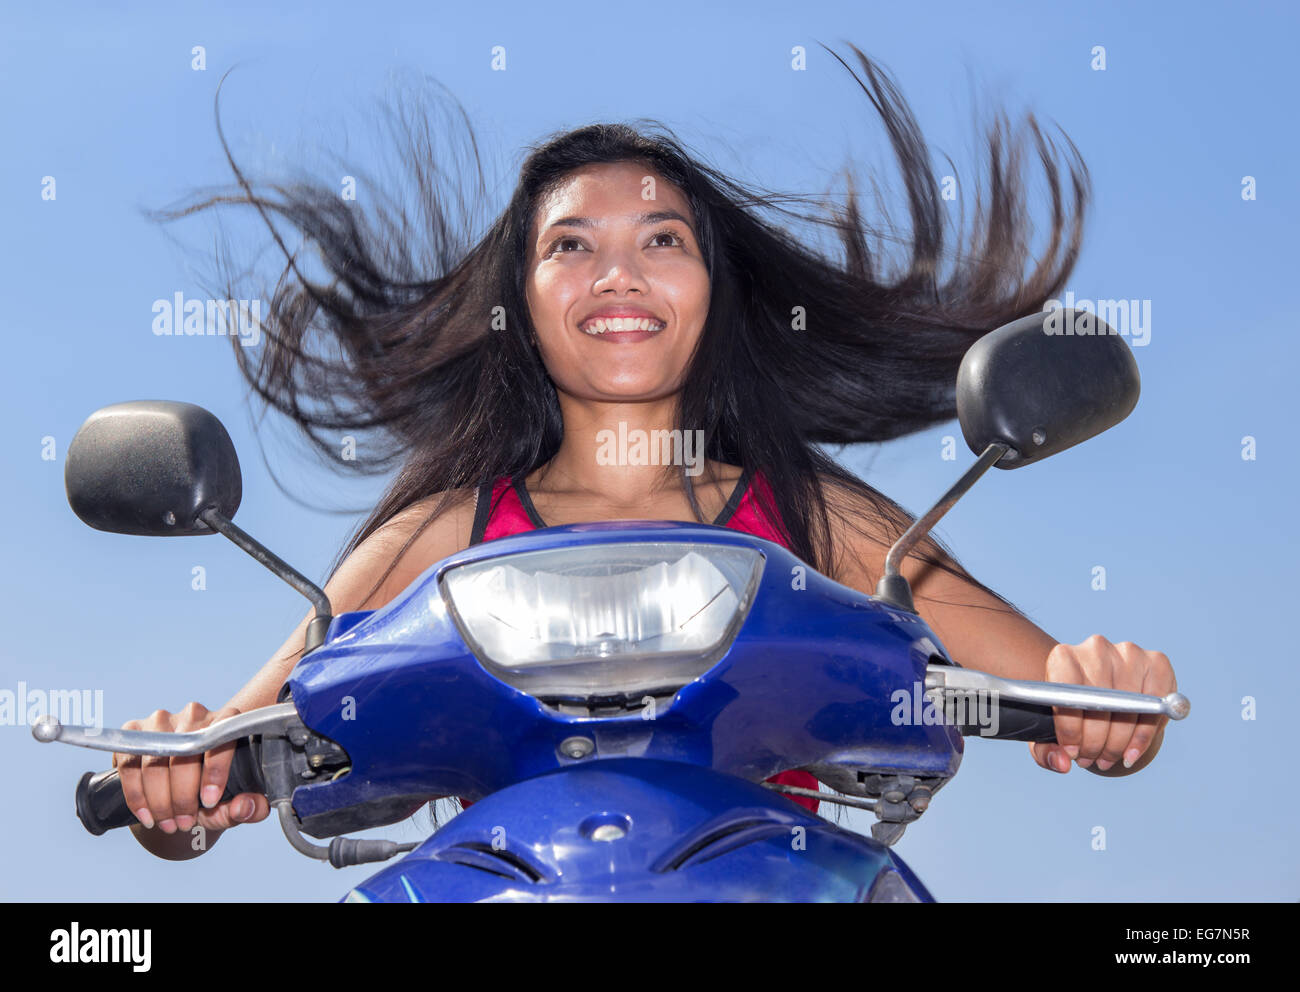 Frau mit fliegenden Haare auf einem Motorrad auf einem blauen Hintergrund Stockfoto